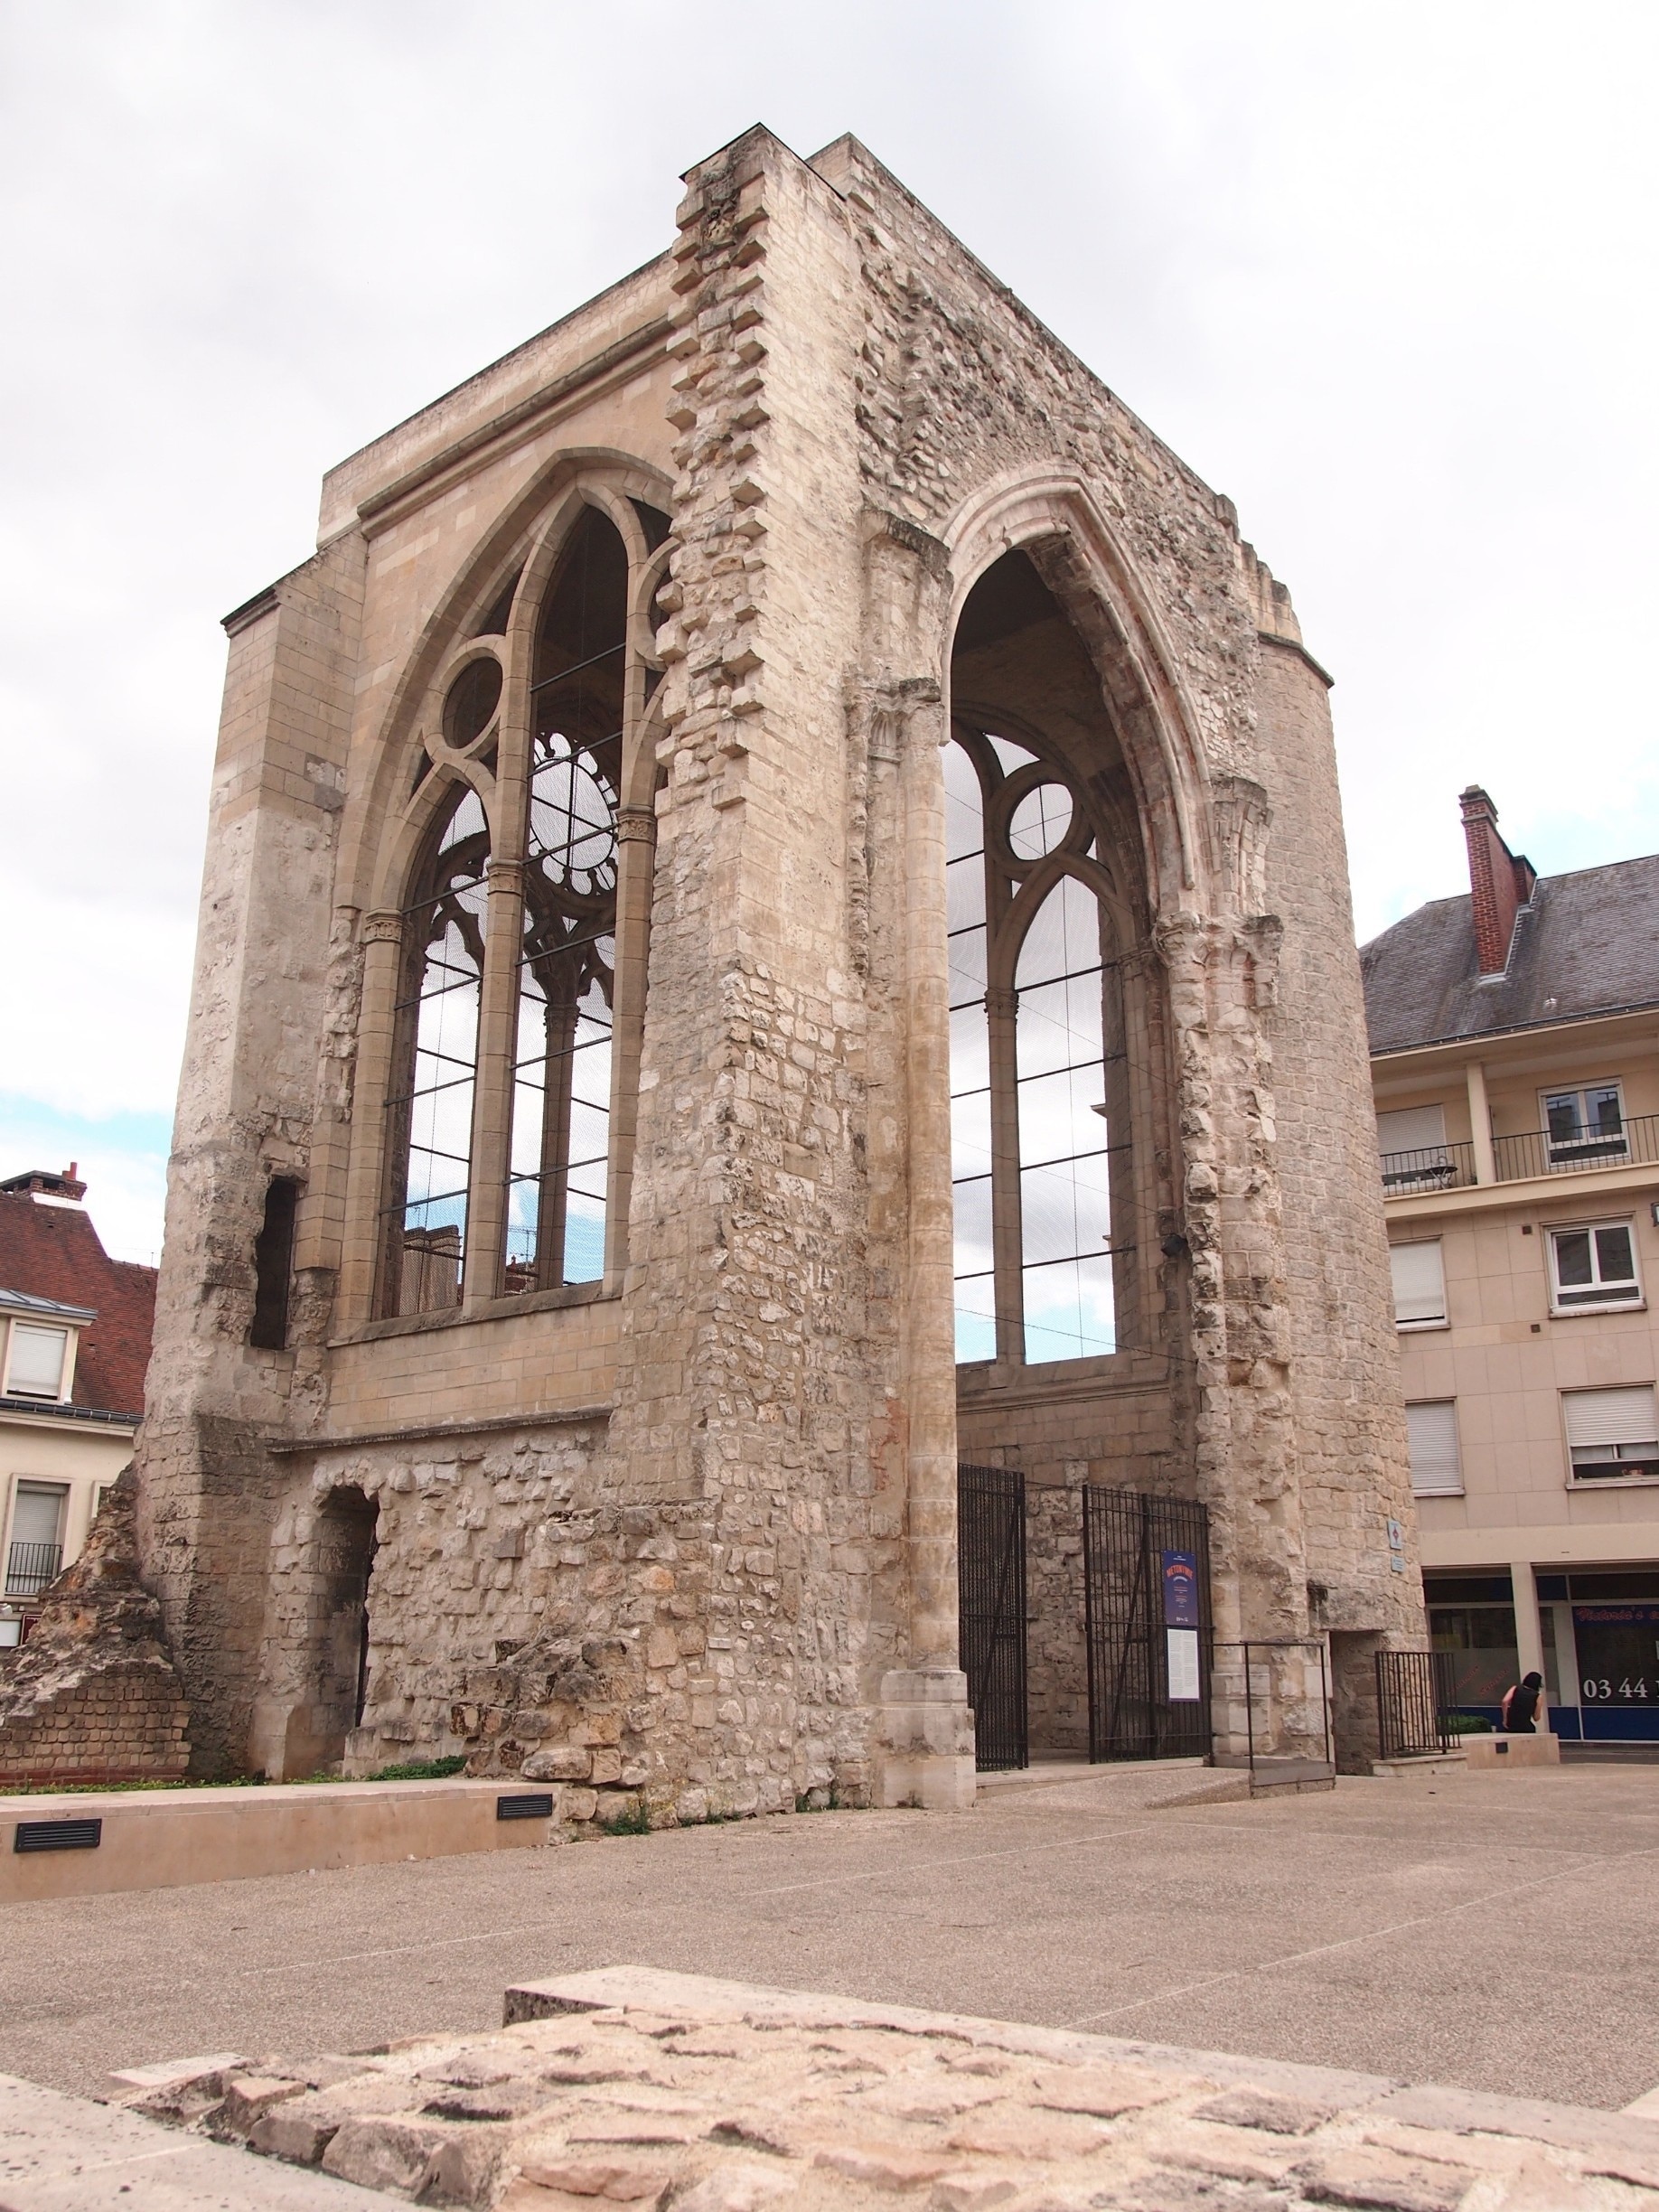 Beauvais, Oise (département), France